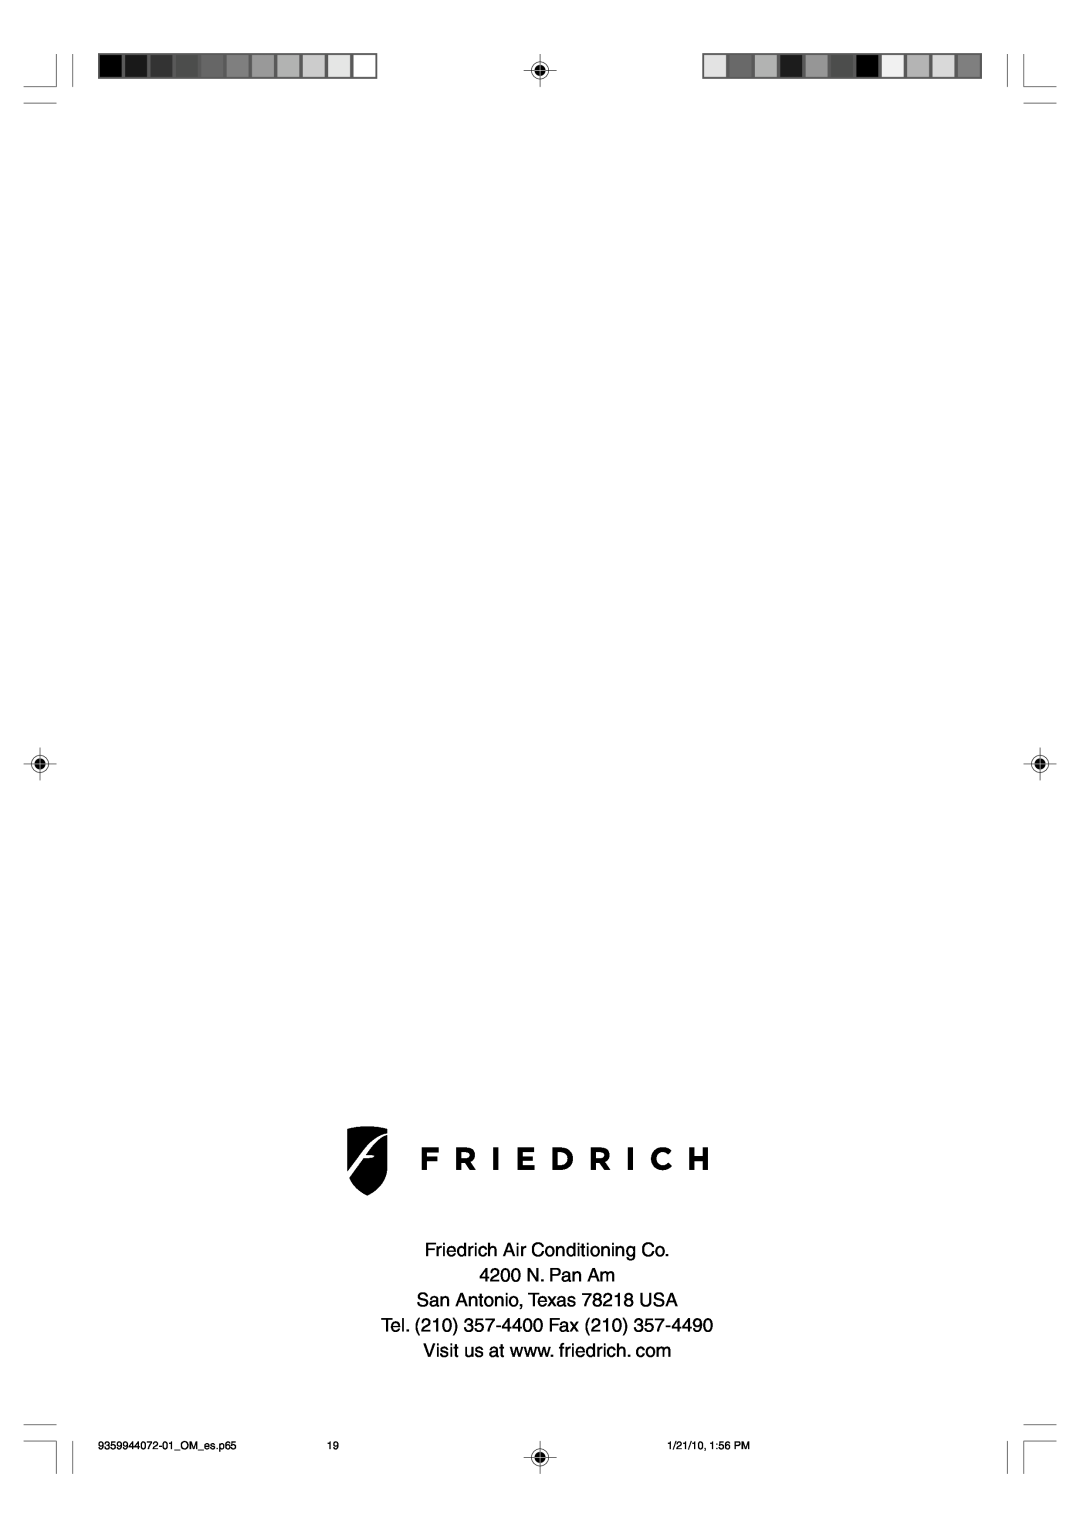 Friedrich P/N9359944072-01 manual Friedrich Air Conditioning Co 4200 N. Pan Am, San Antonio, Texas 78218 USA, OM es.p65 